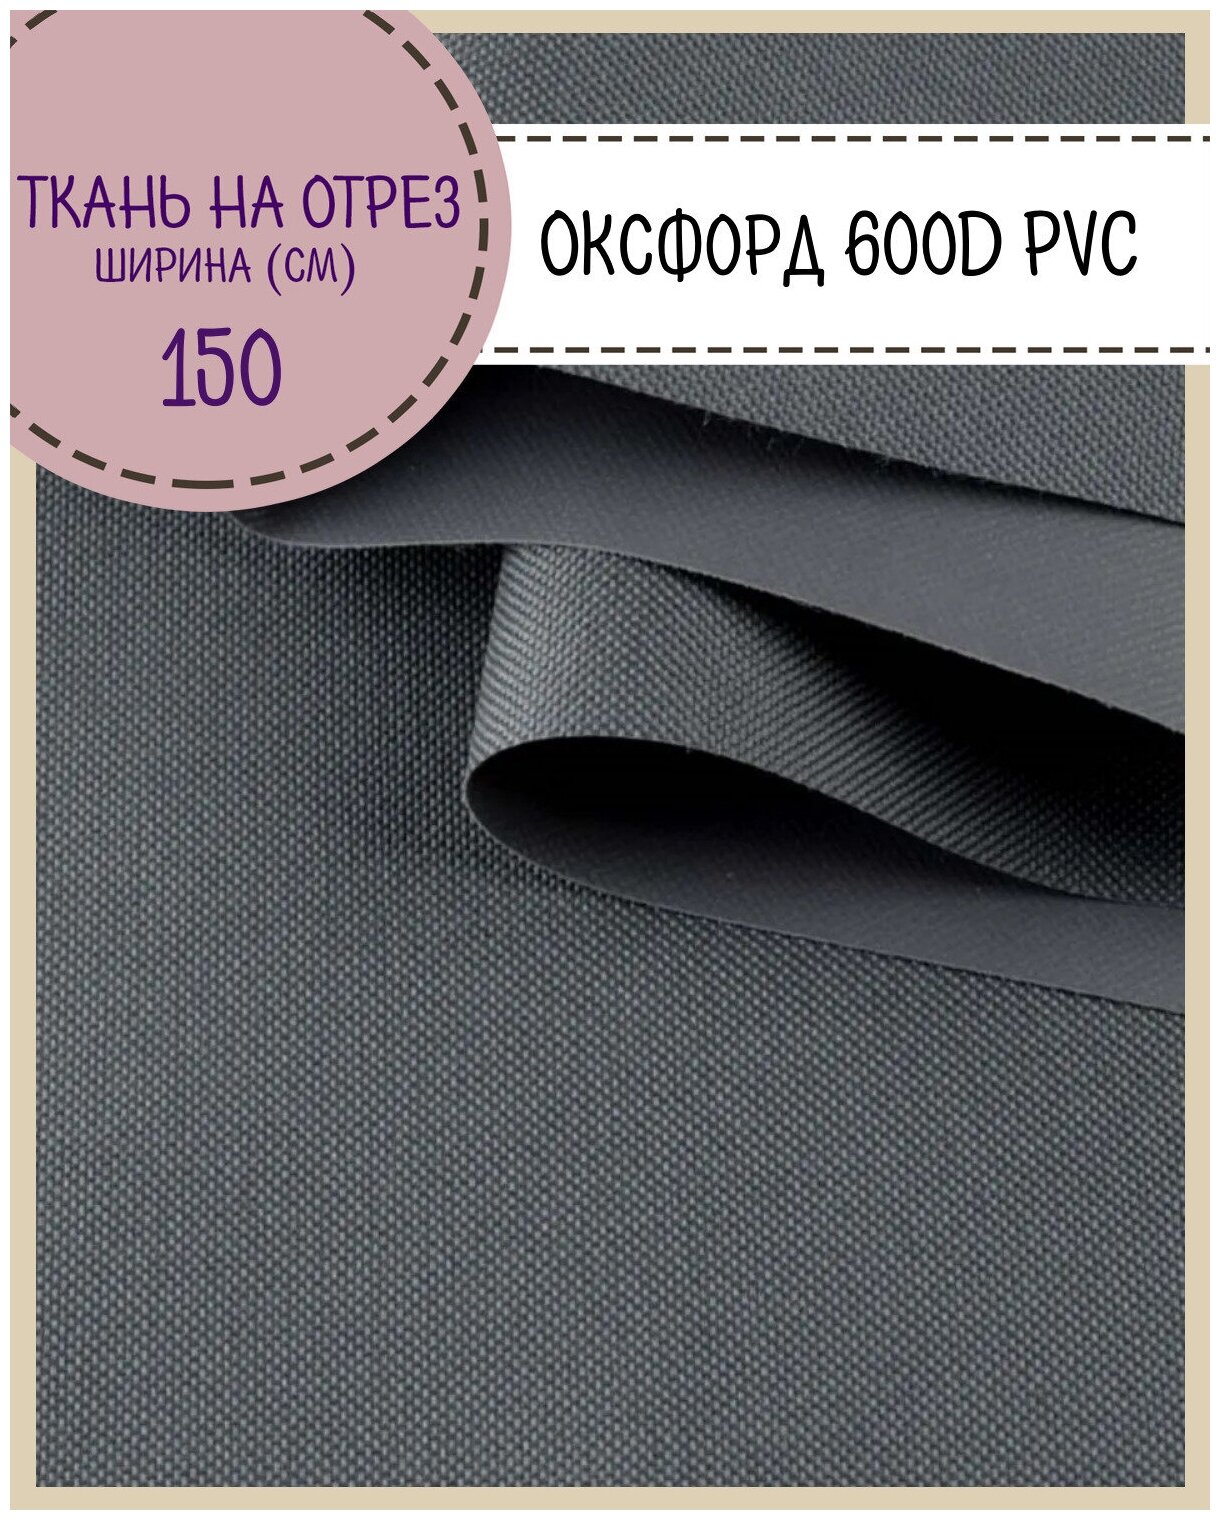 Ткань Оксфорд Oxford 600D PVC (ПВХ), водоотталкивающая, цв. т. серый , на отрез, цена за пог. метр